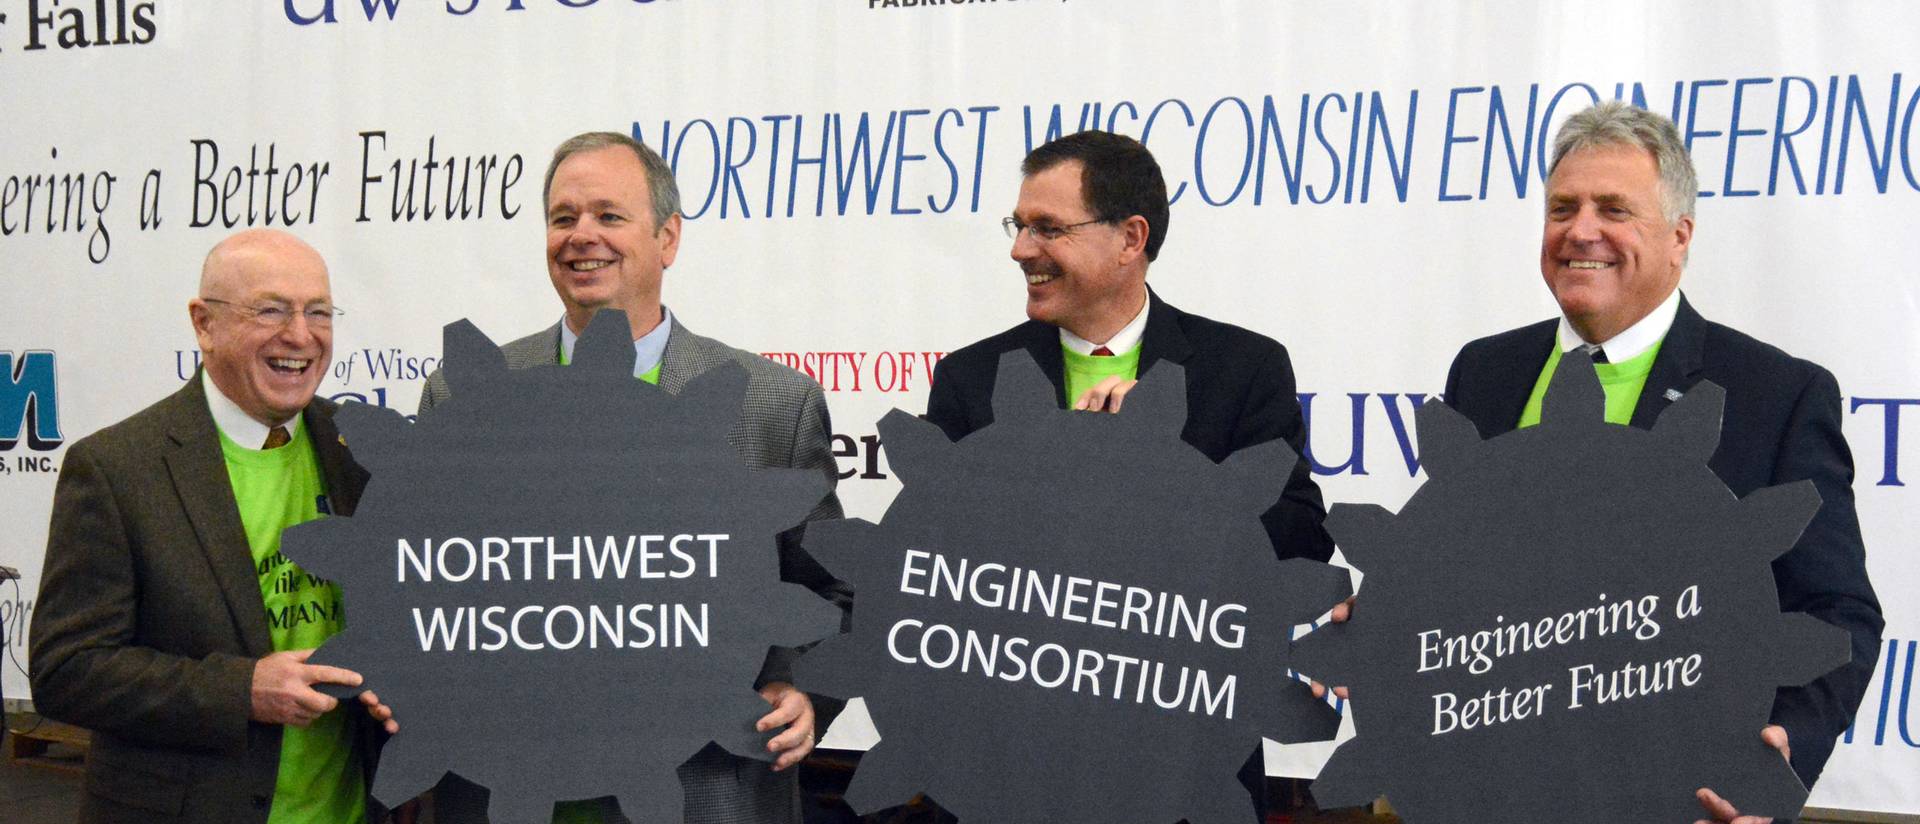 Ray Cross, James Schmidt, Dean Van Galen and Bob Meyer at Northwest Wisconsin Engineering Consortium celebration